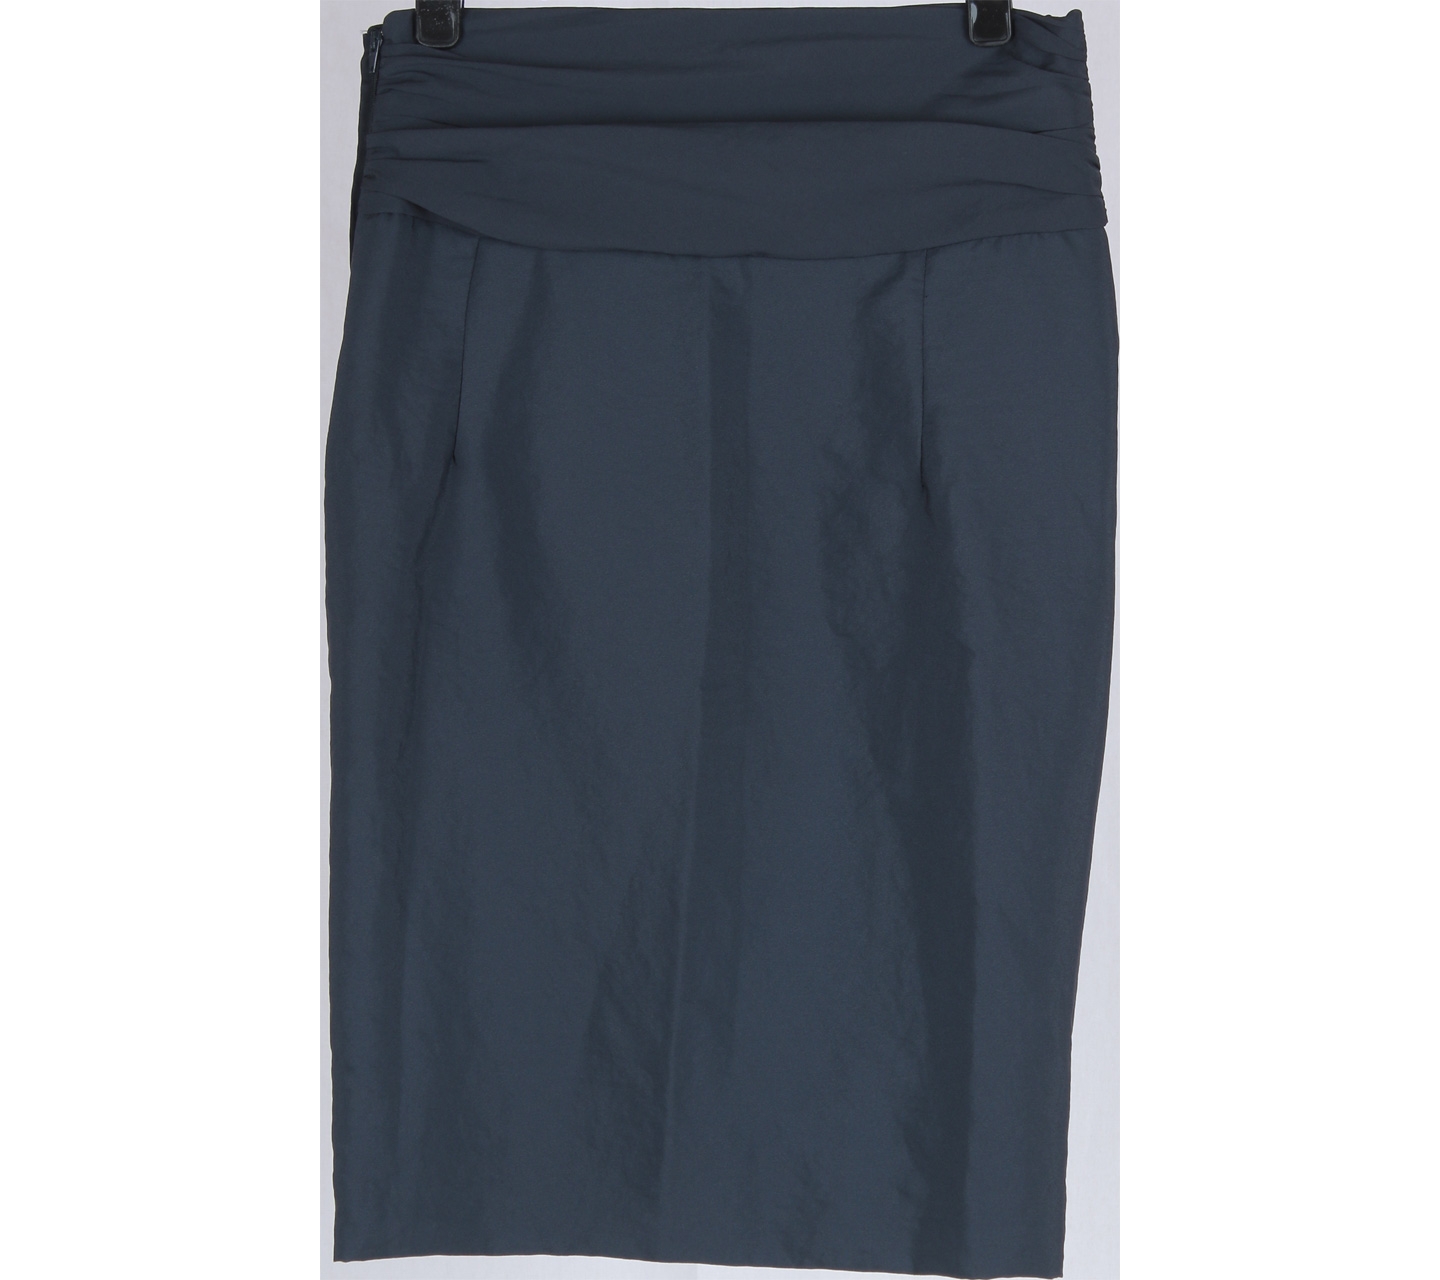 Zara Dark Blue Layered Skirt